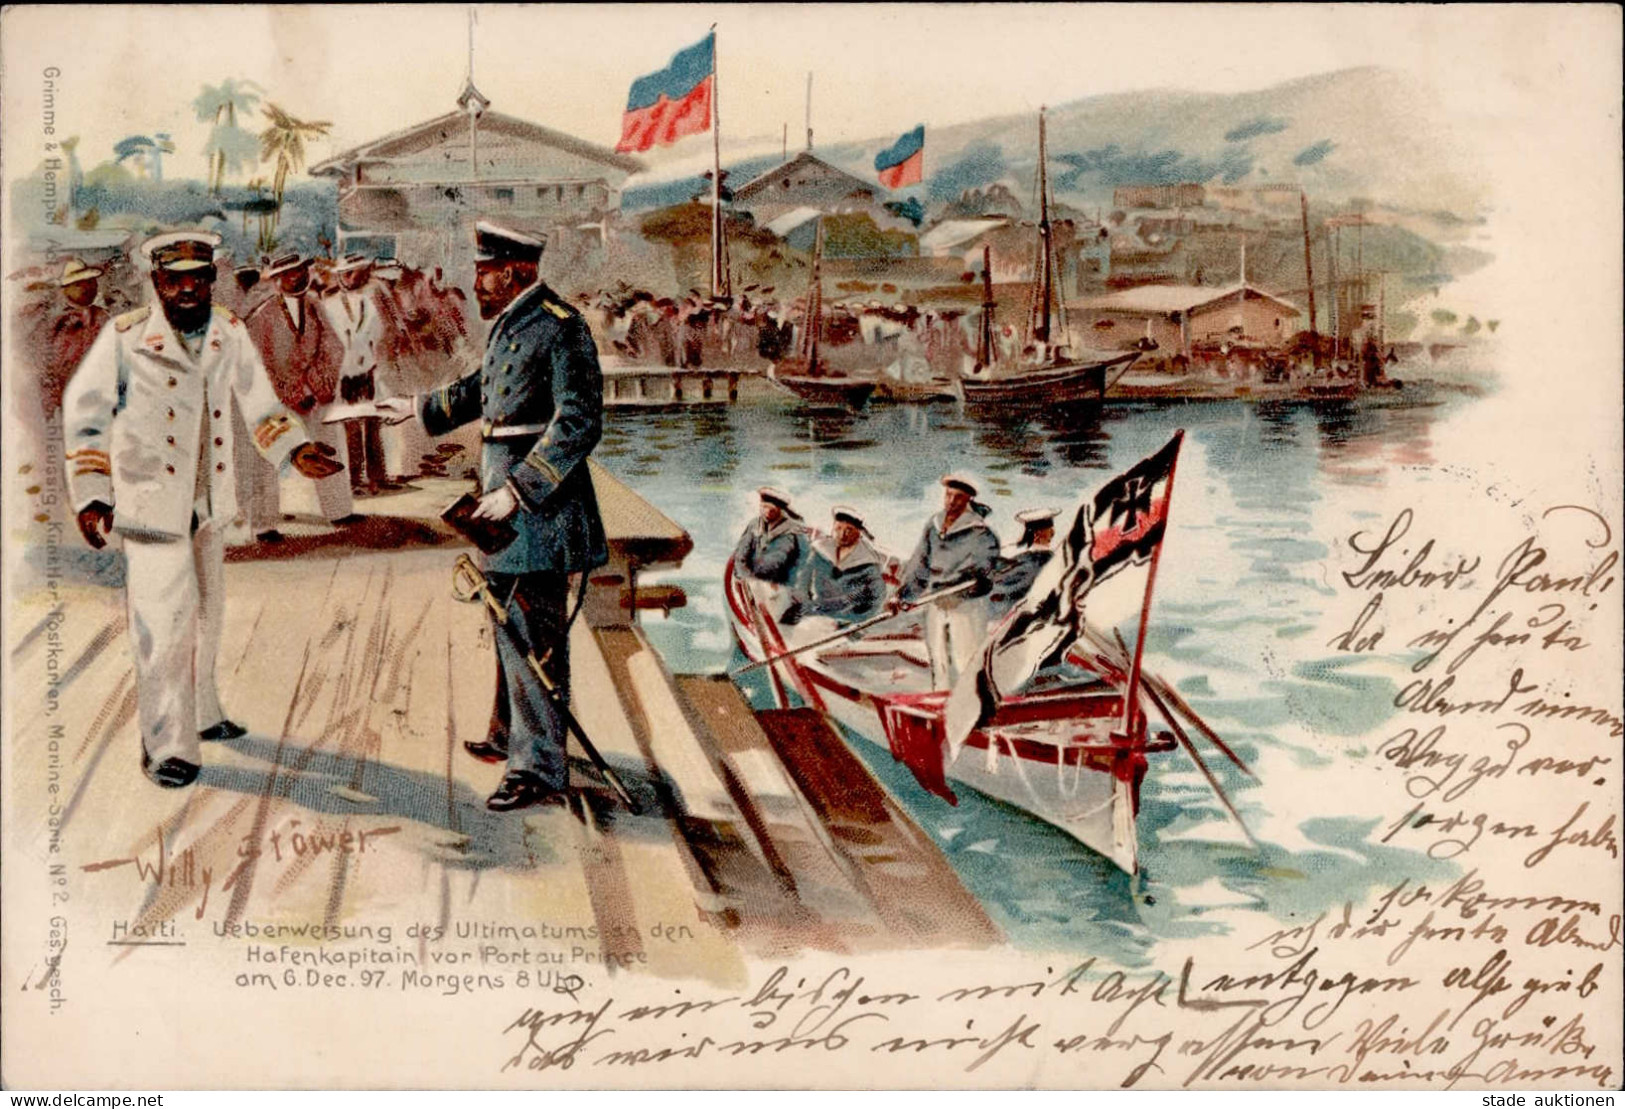 WILLY STÖWER - HAITI Überweisung Des Ultimatums An Den Hafenkapitän Vor PORT AU PRINCE Am 6.12.1897 I-II - Guerra 1914-18